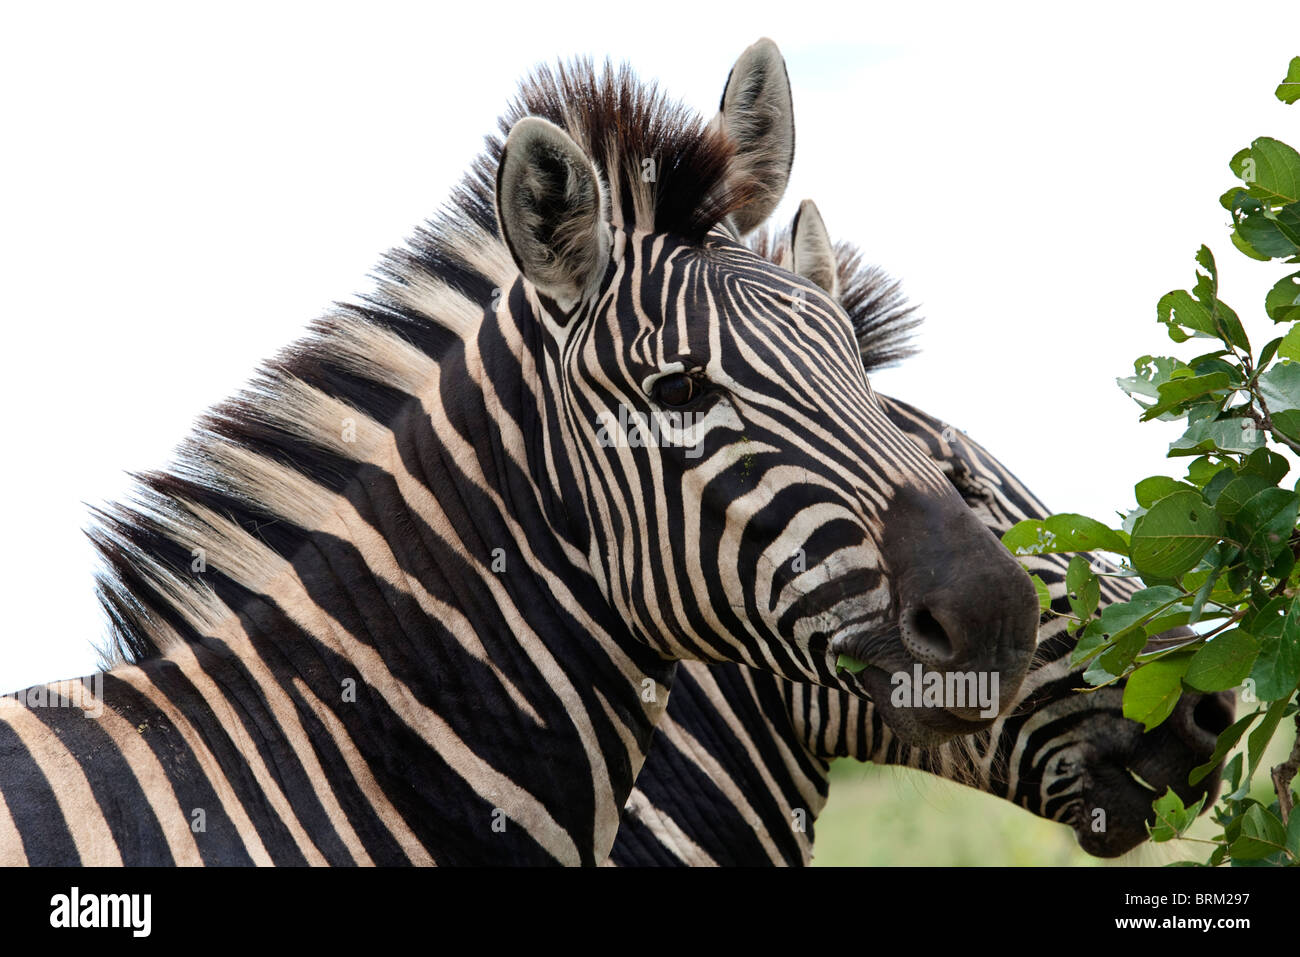 Ein Portrait eines Zebras wandte sich in Richtung der Kamera mit dem Profil eines anderen dahinter Stockfoto